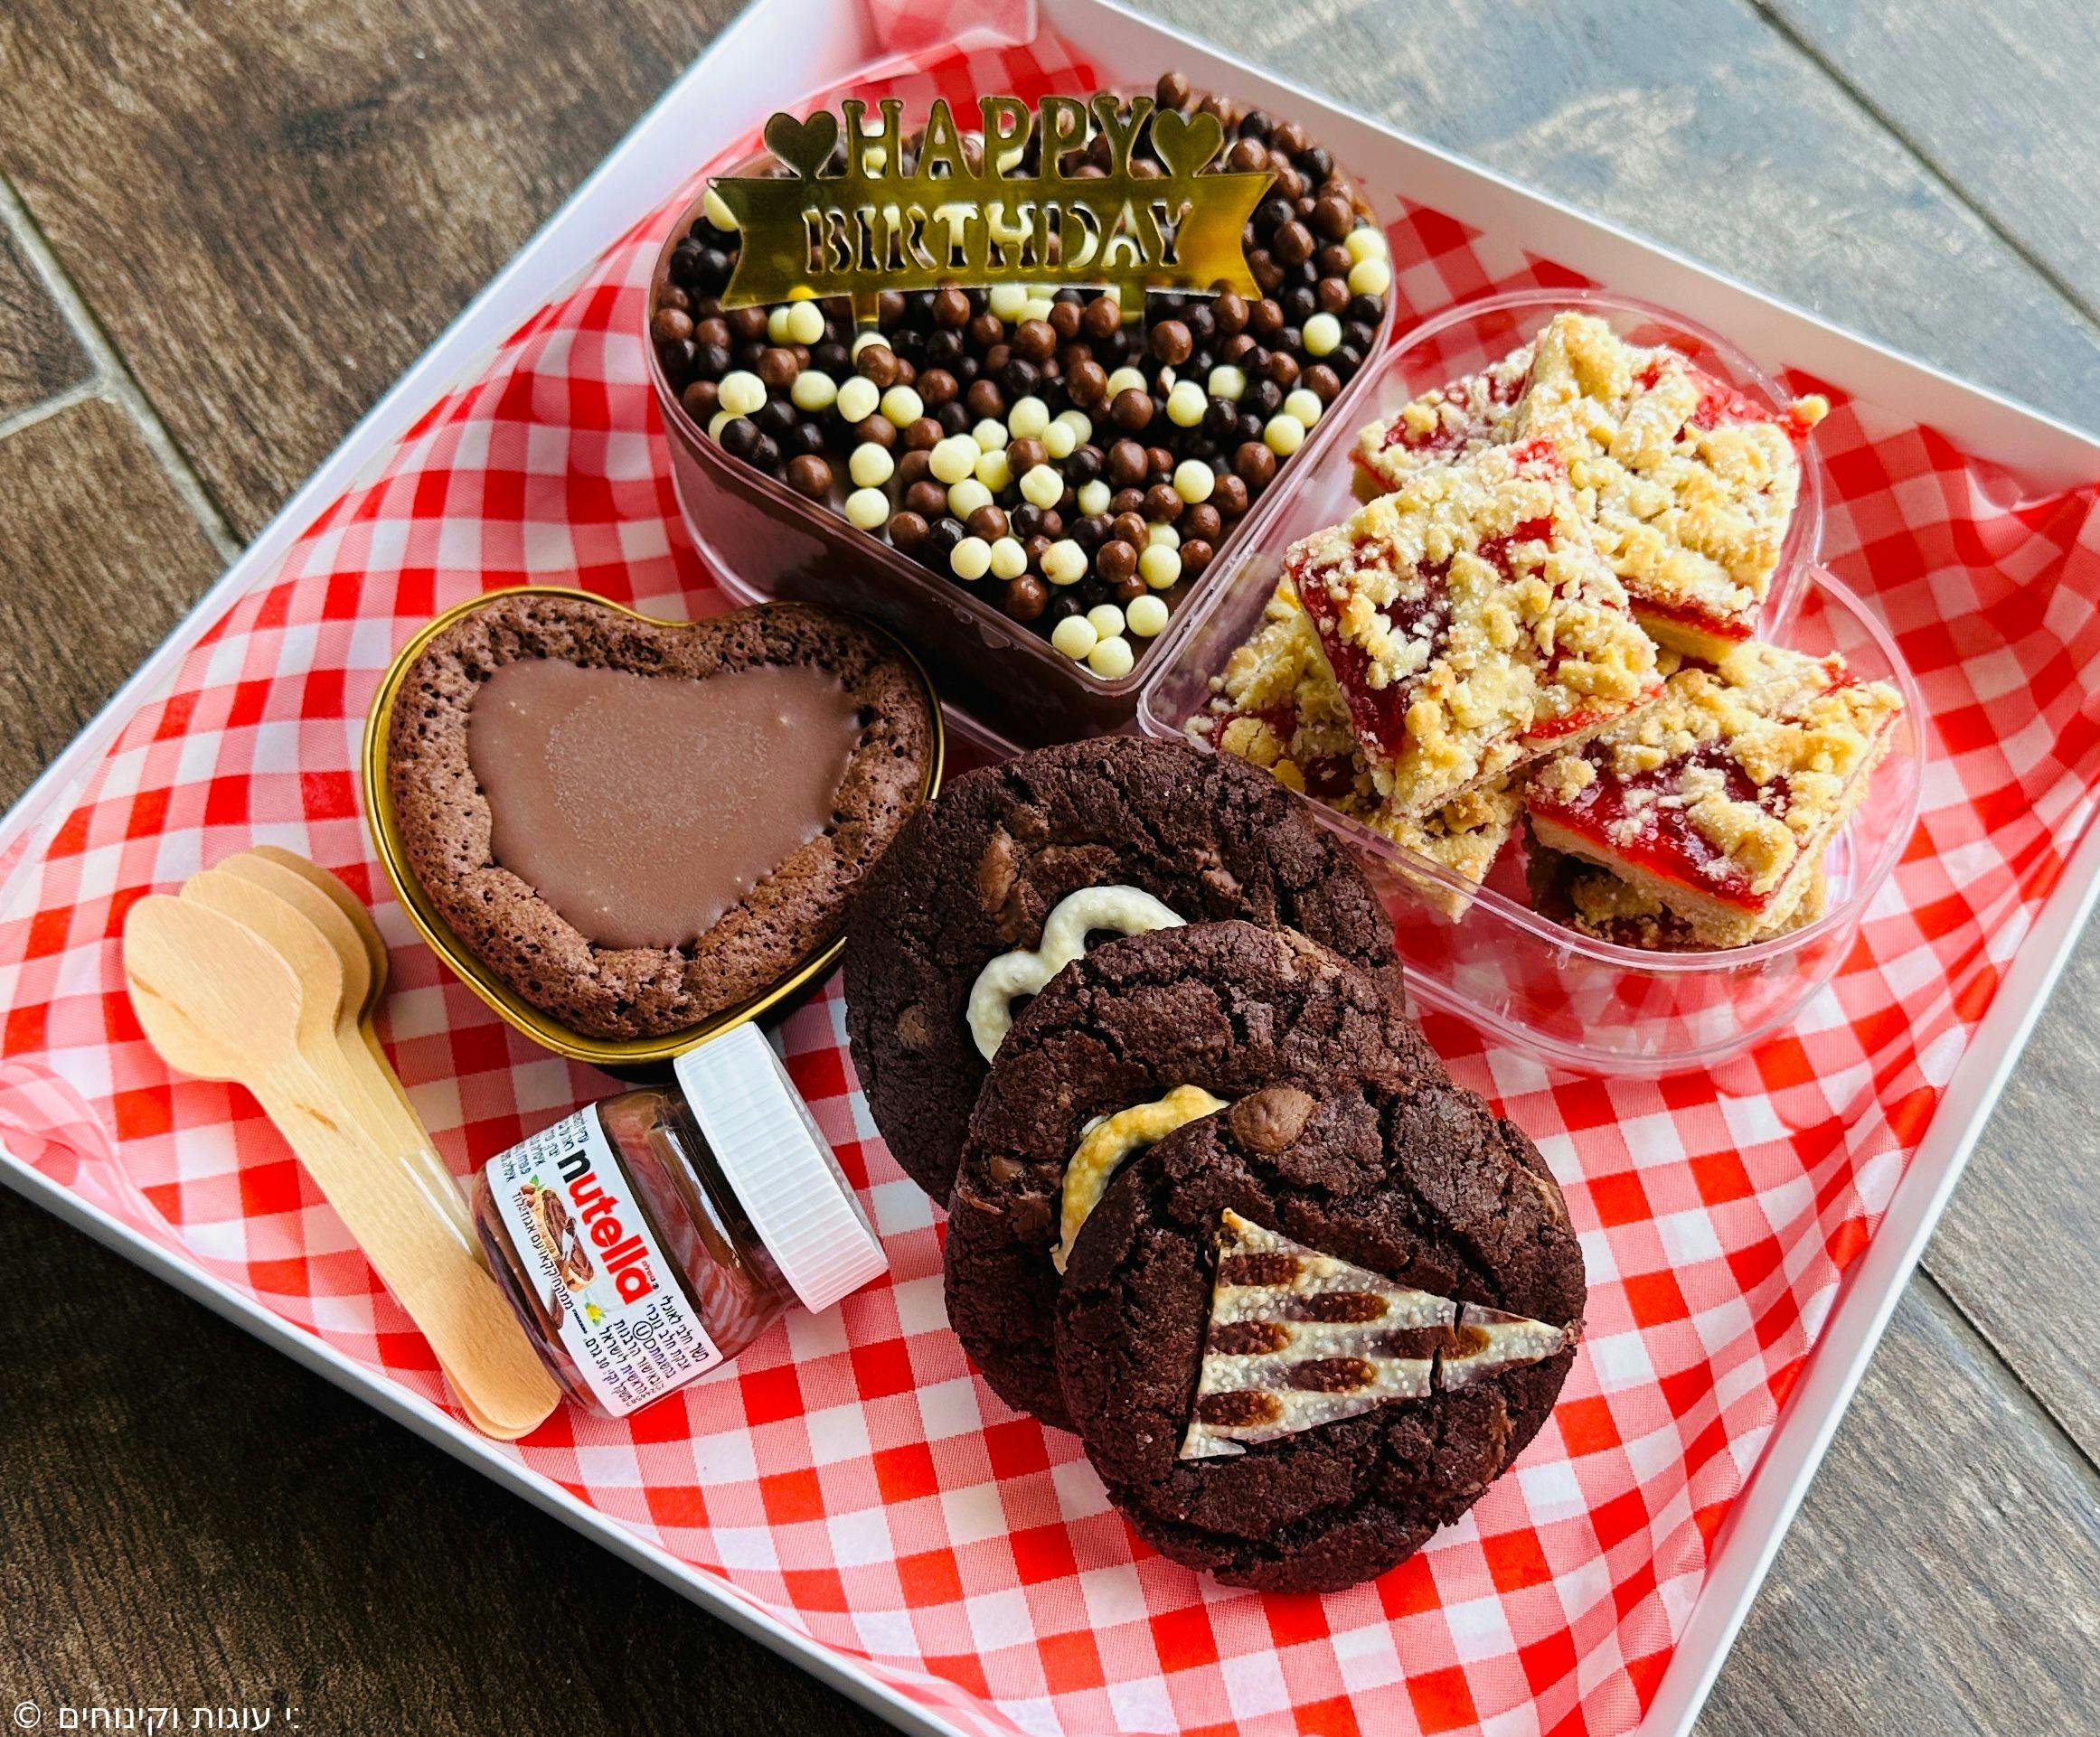 מארז קינוחים לחברה - לב חיתוכיות ריבה, לב כדורי שוקולד, פאדג׳ שוקולד אישית, 3 עוגיות שוקוצ׳יפס גדולות